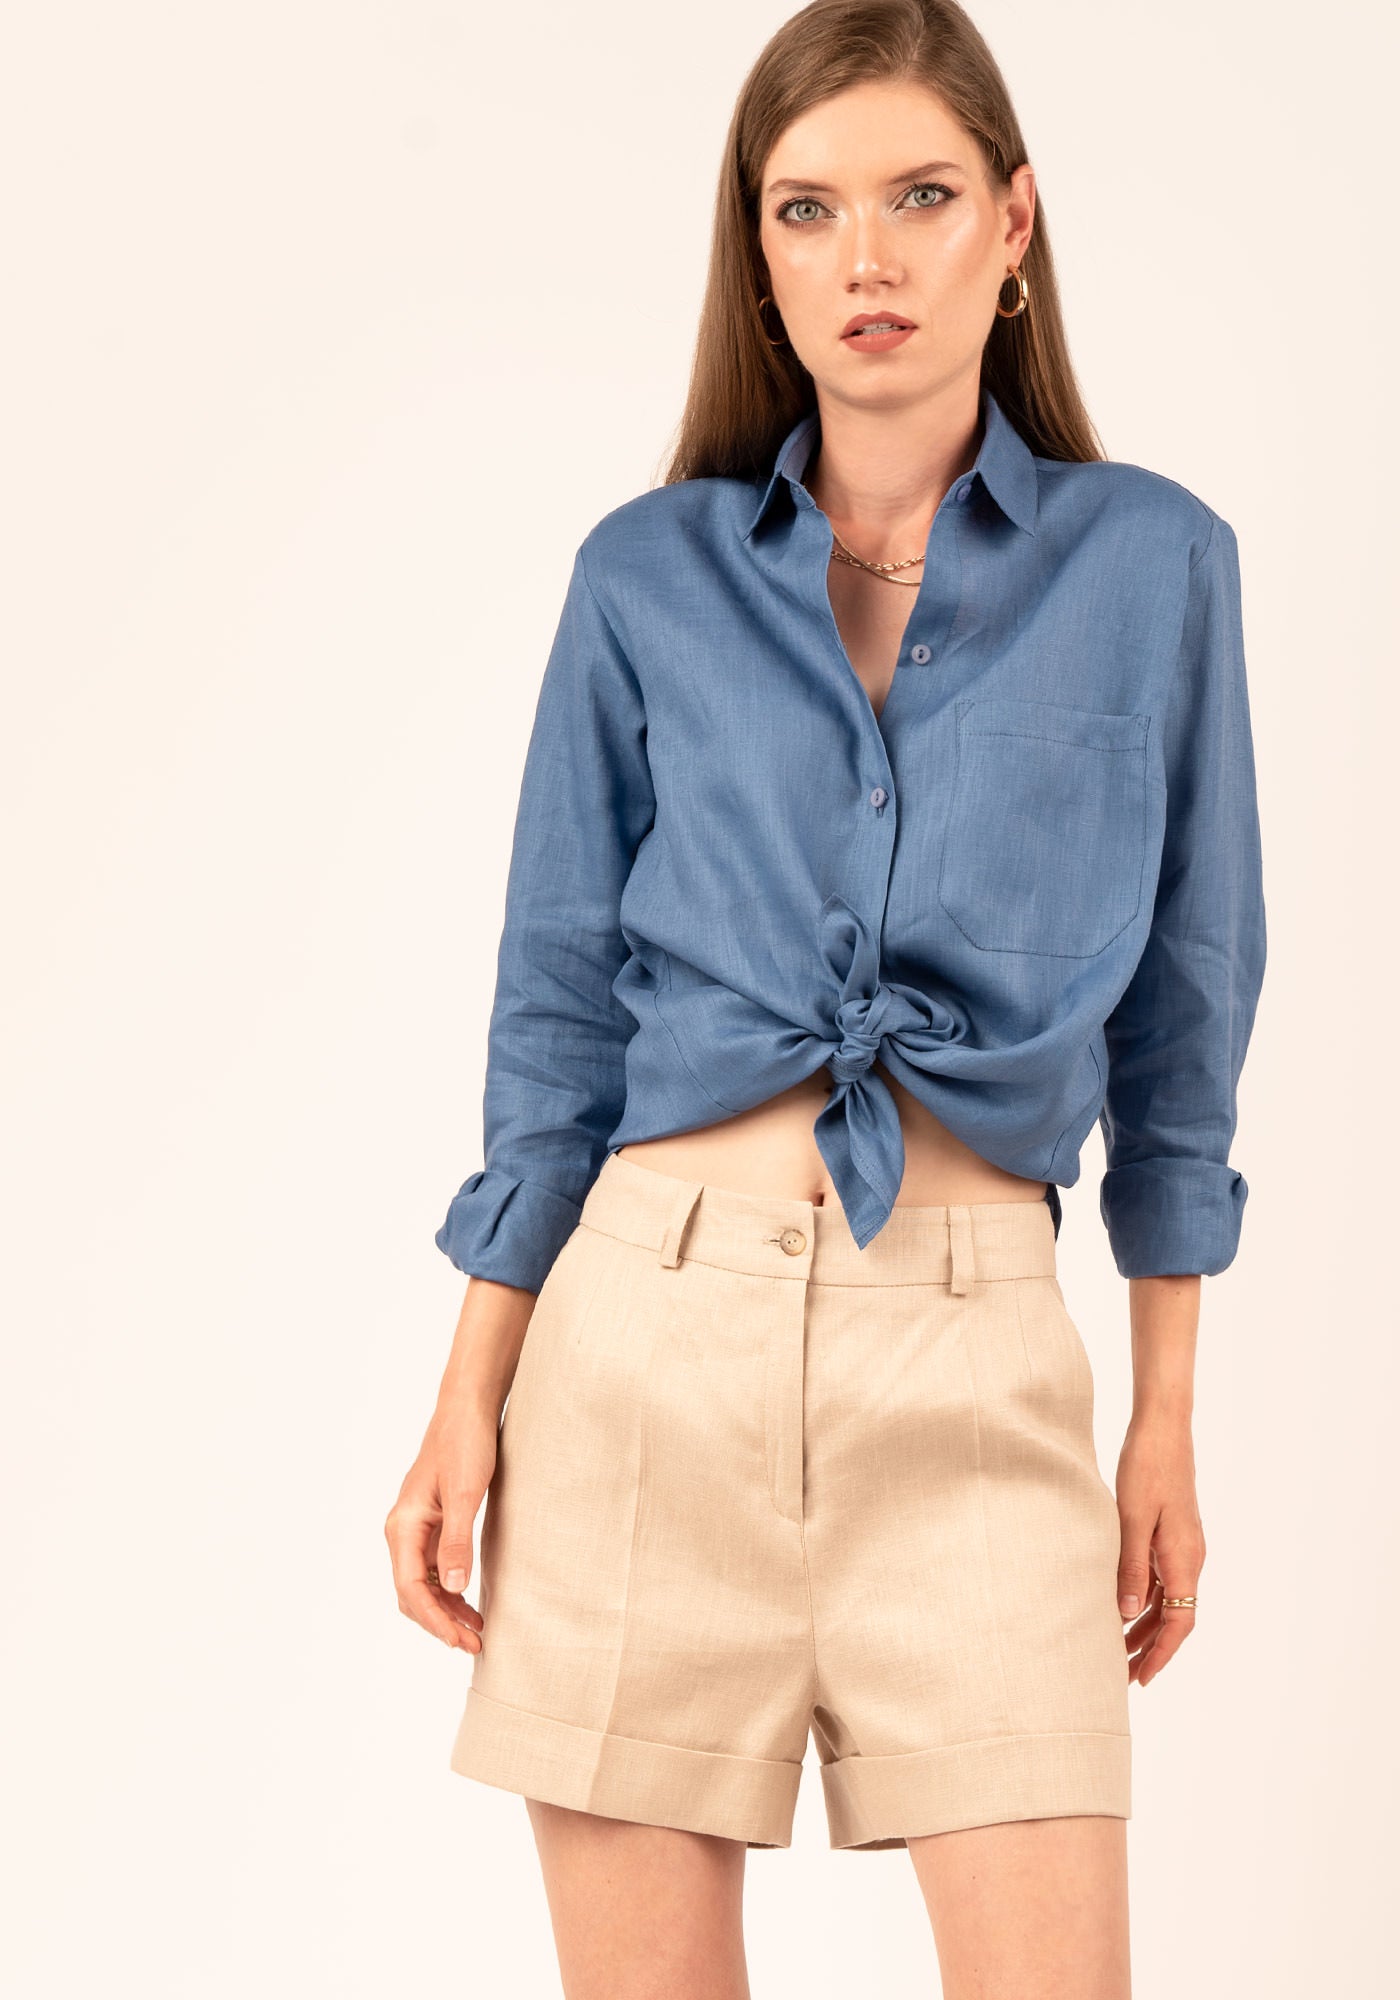 Women's Relaxed fit Linen Shirt in Blue